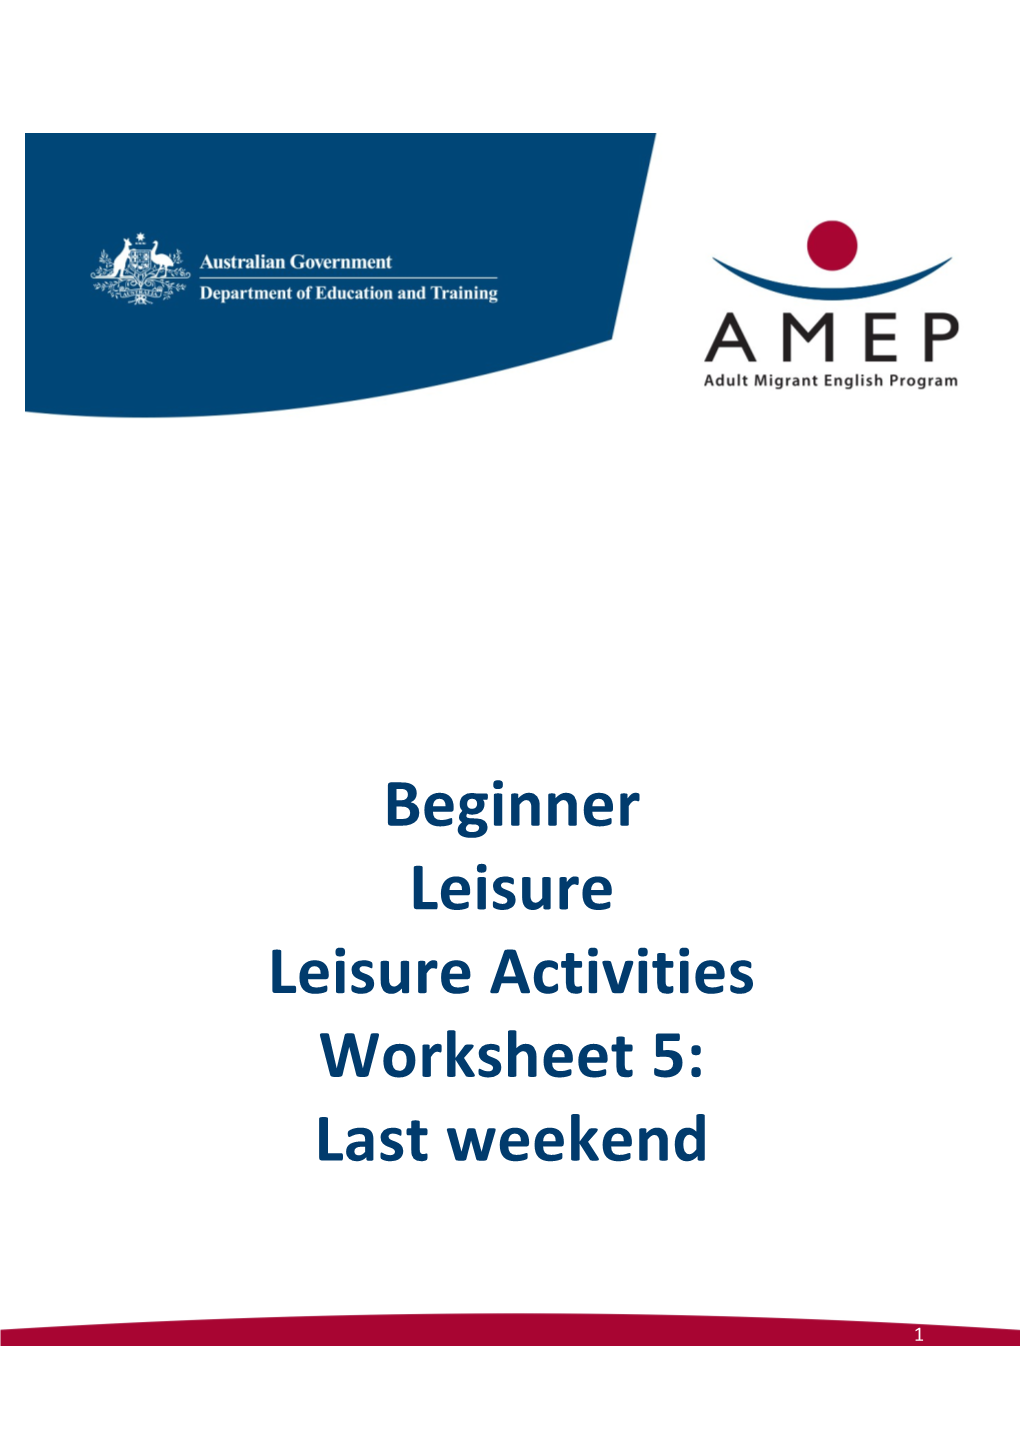 Beginner Leisure Leisure Activities Worksheet 5: Last Weekend